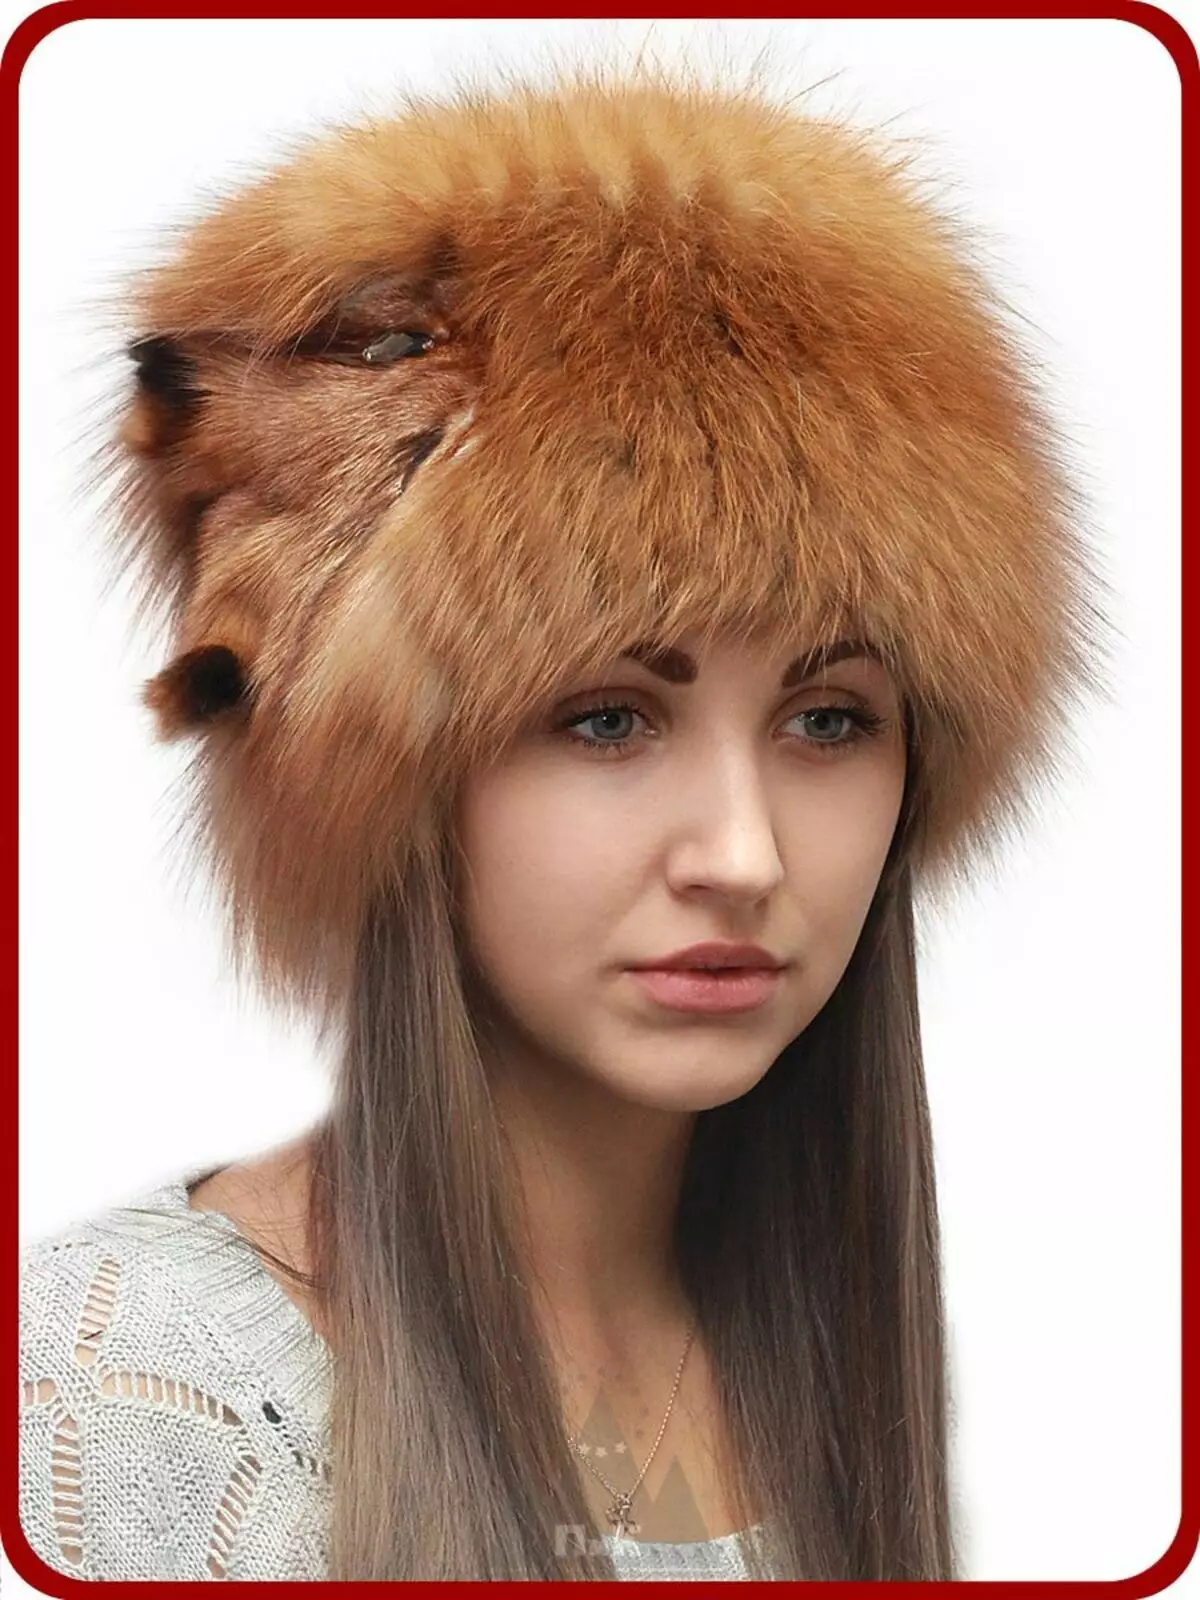 Hats femení de pell (117 fotos): cinta de barret, models de moda 2021-2022 Fabricat en pell Chernoburki, visó i altres pells naturals 2949_57